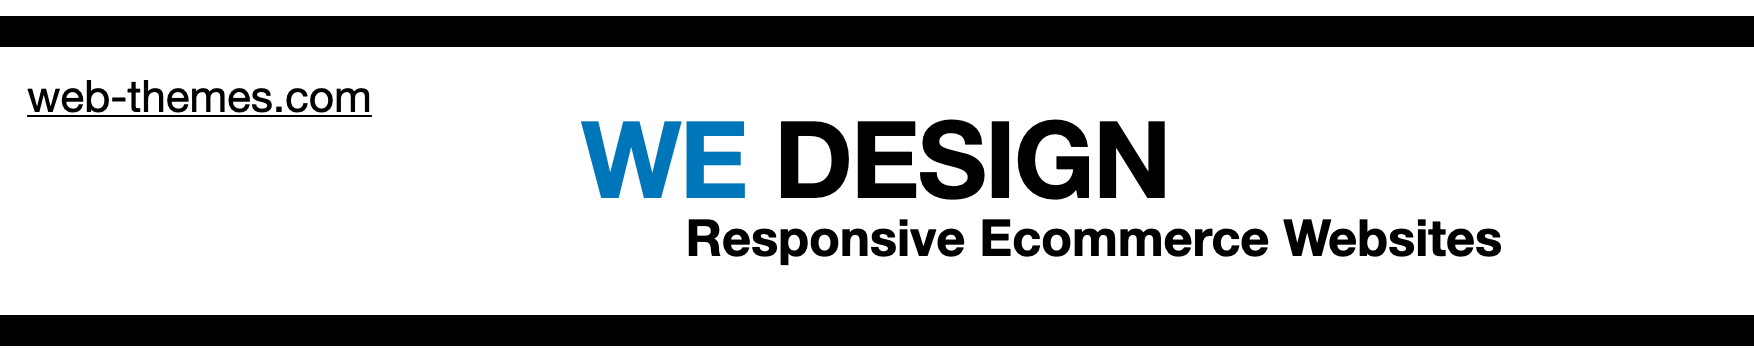 We Design web-ethemes.com